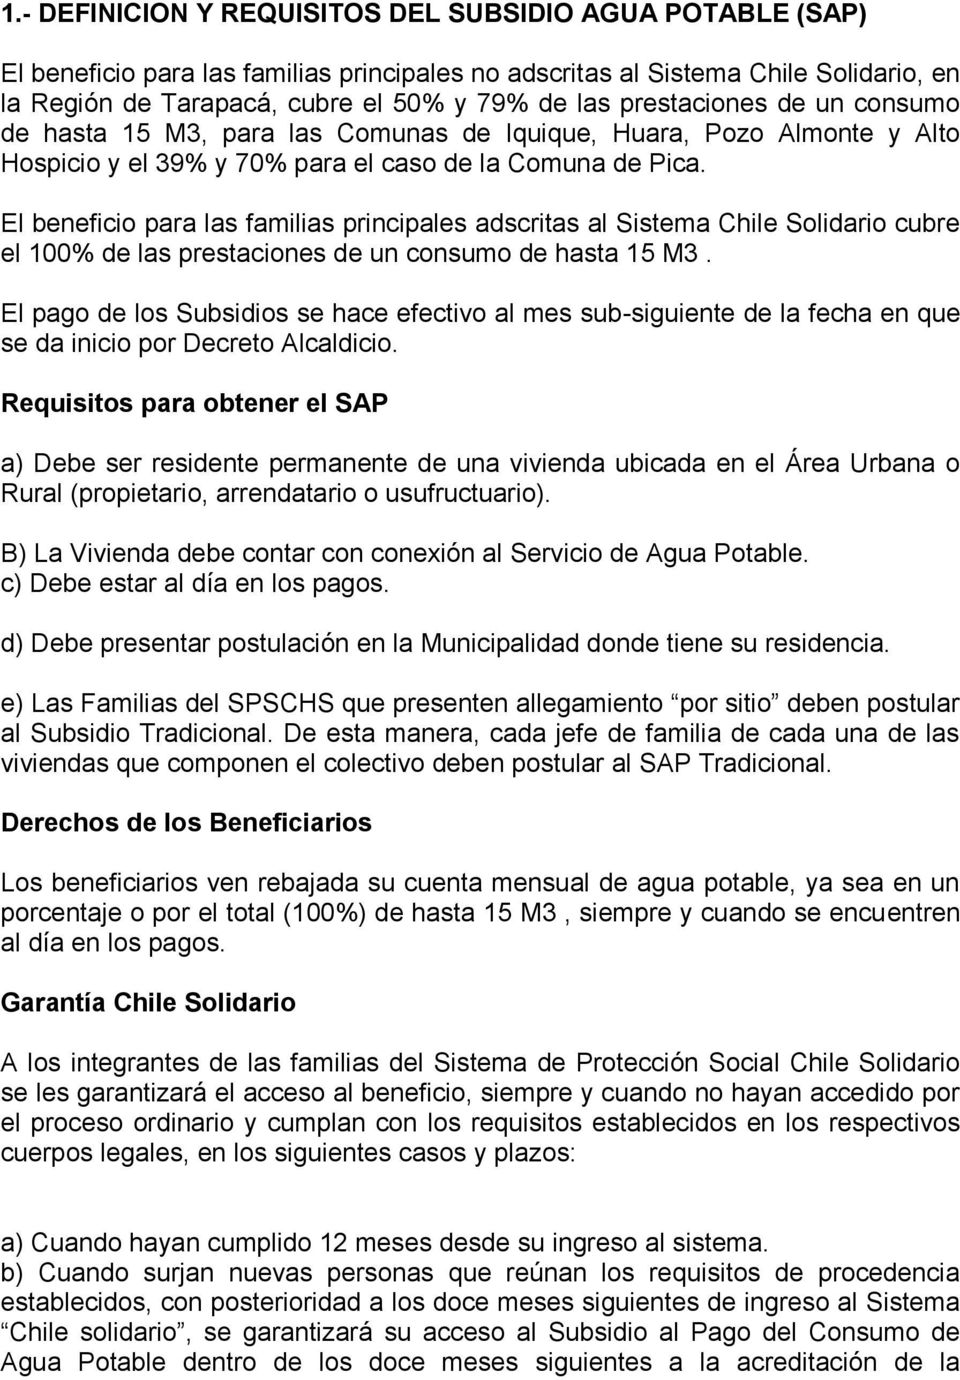 El beneficio para las familias principales adscritas al Sistema Chile Solidario cubre el 100% de las prestaciones de un consumo de hasta 15 M3.